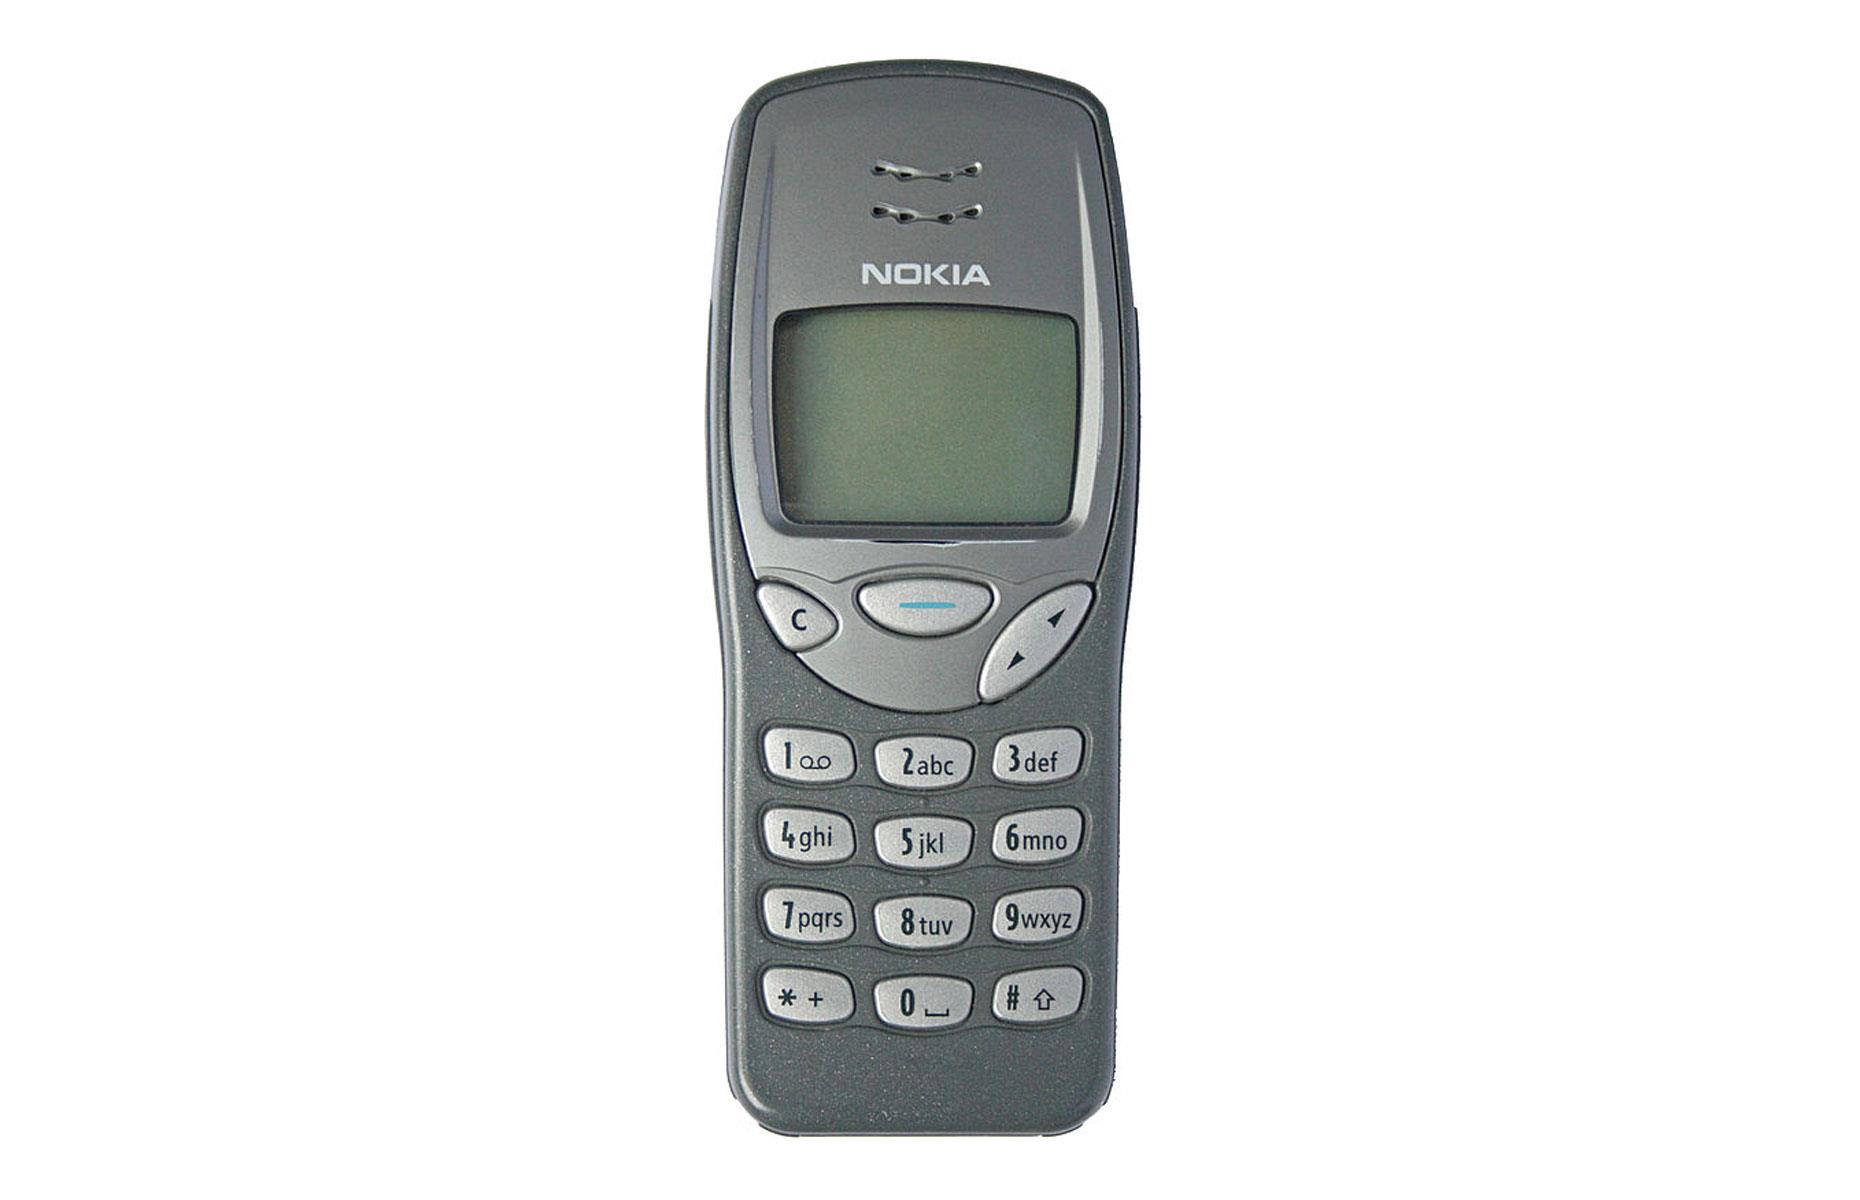 1990s: Nokia 3210 